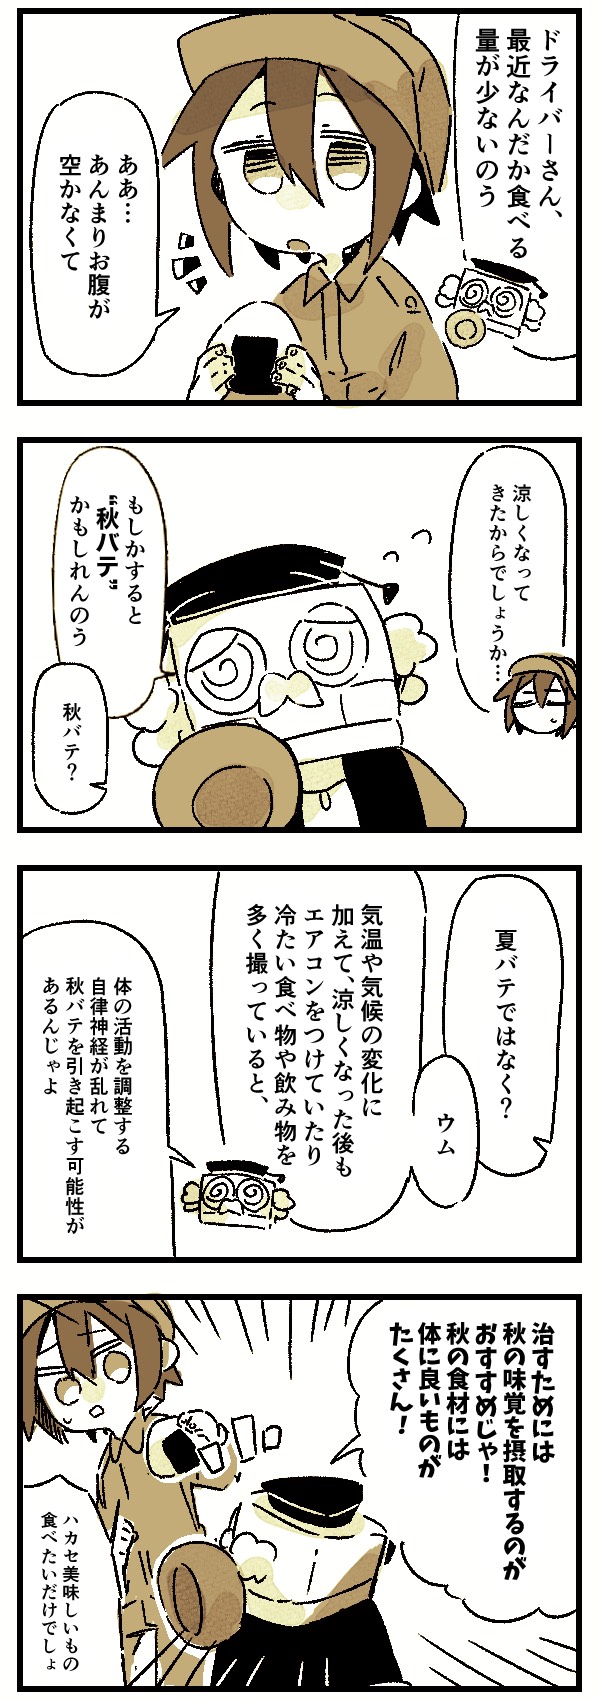 【ドラ博士 4コマ漫画#19】秋バテ